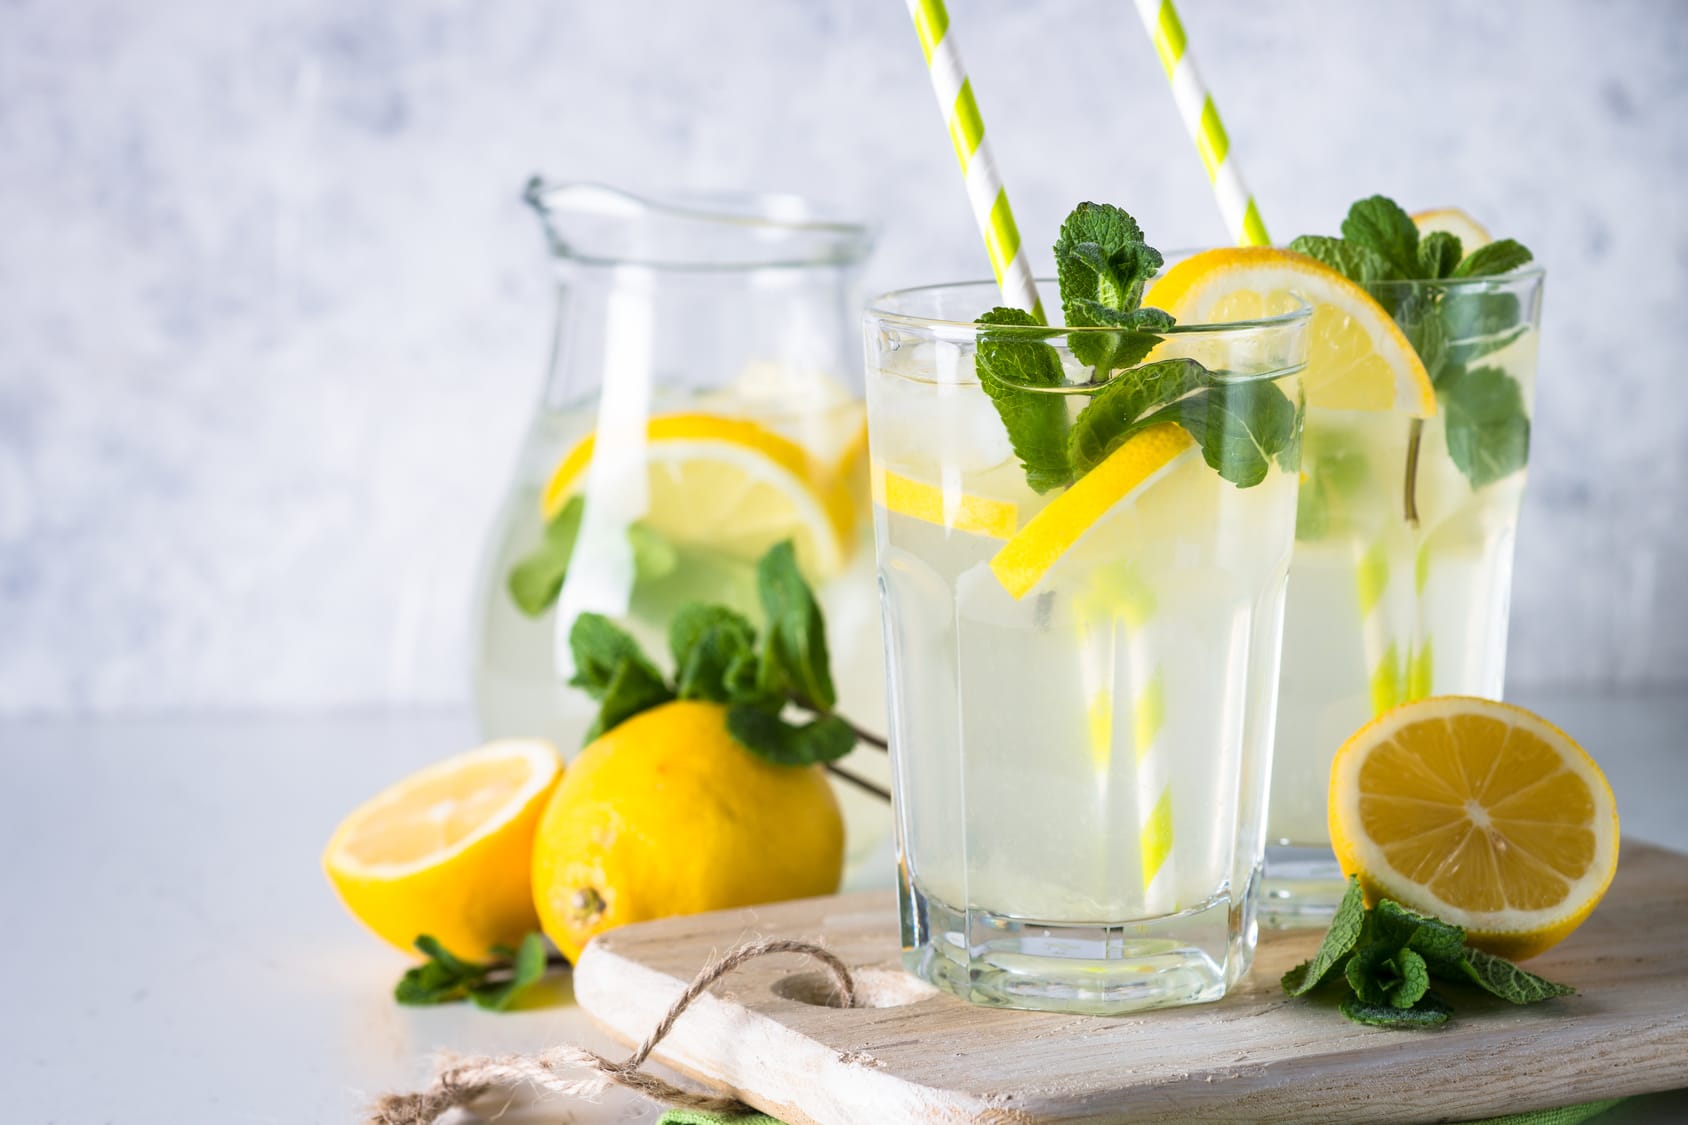 Limonade selber machen – So geht‘s